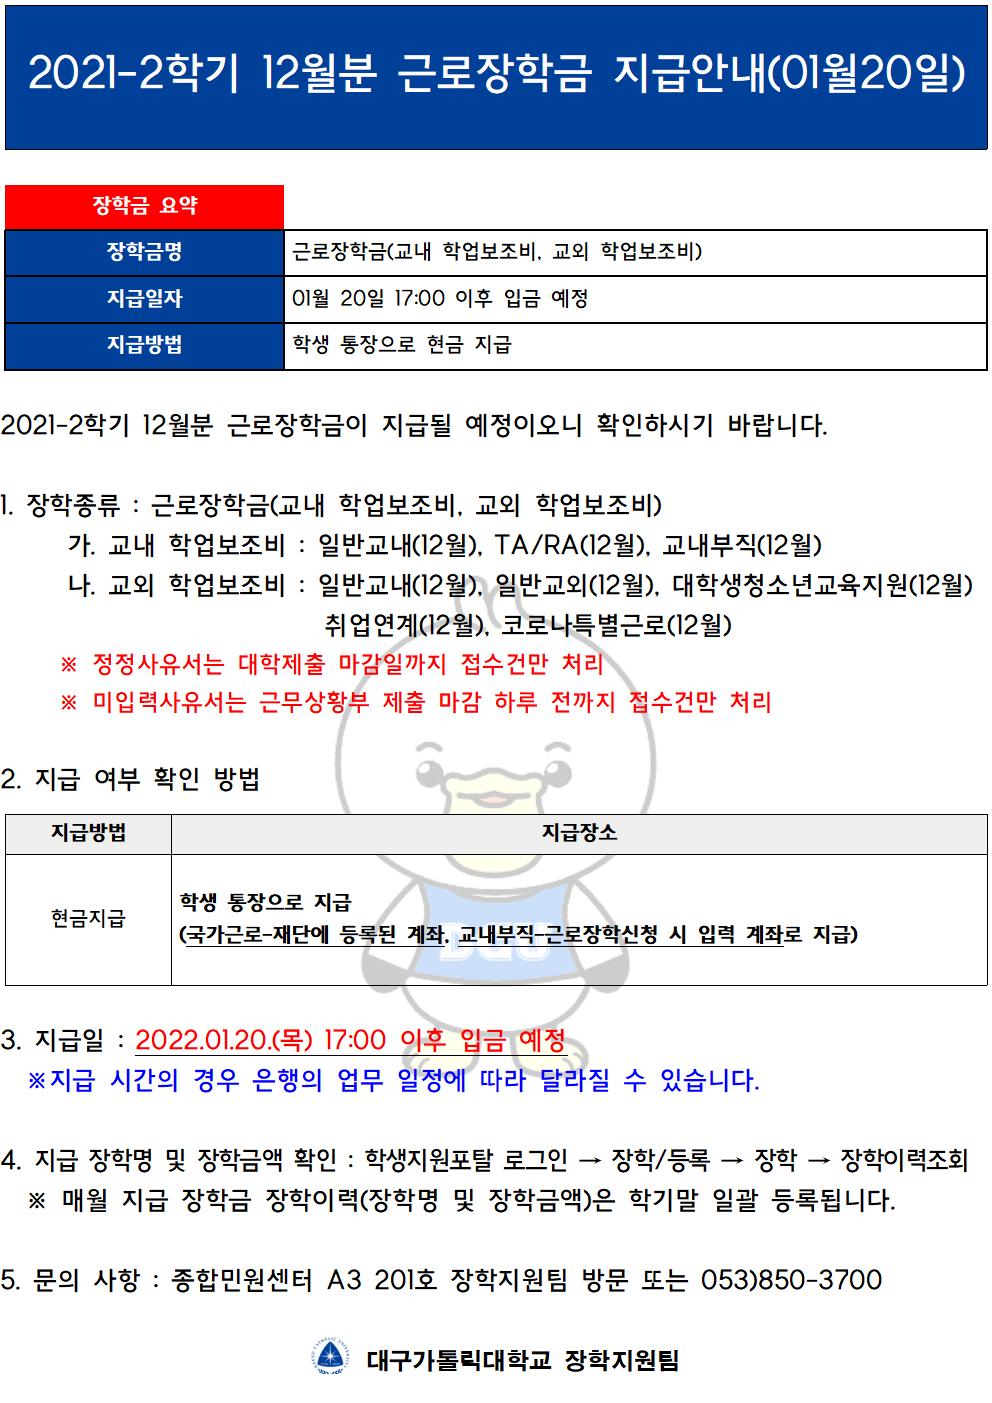 [근로] 2021-2학기 12월분 근로장학금 지급안내(01월20일)